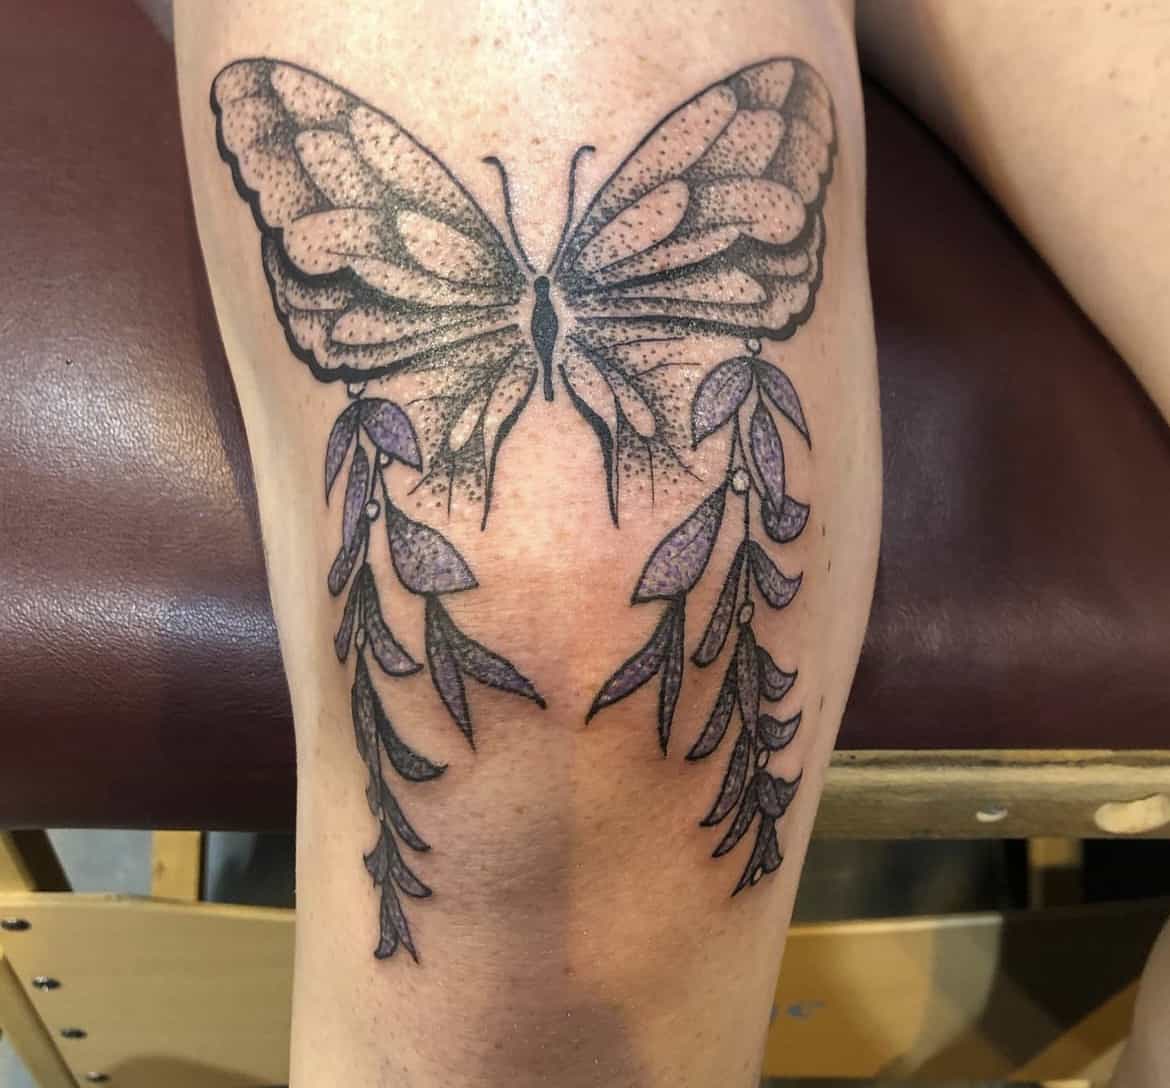 Omaha Flash tattoo